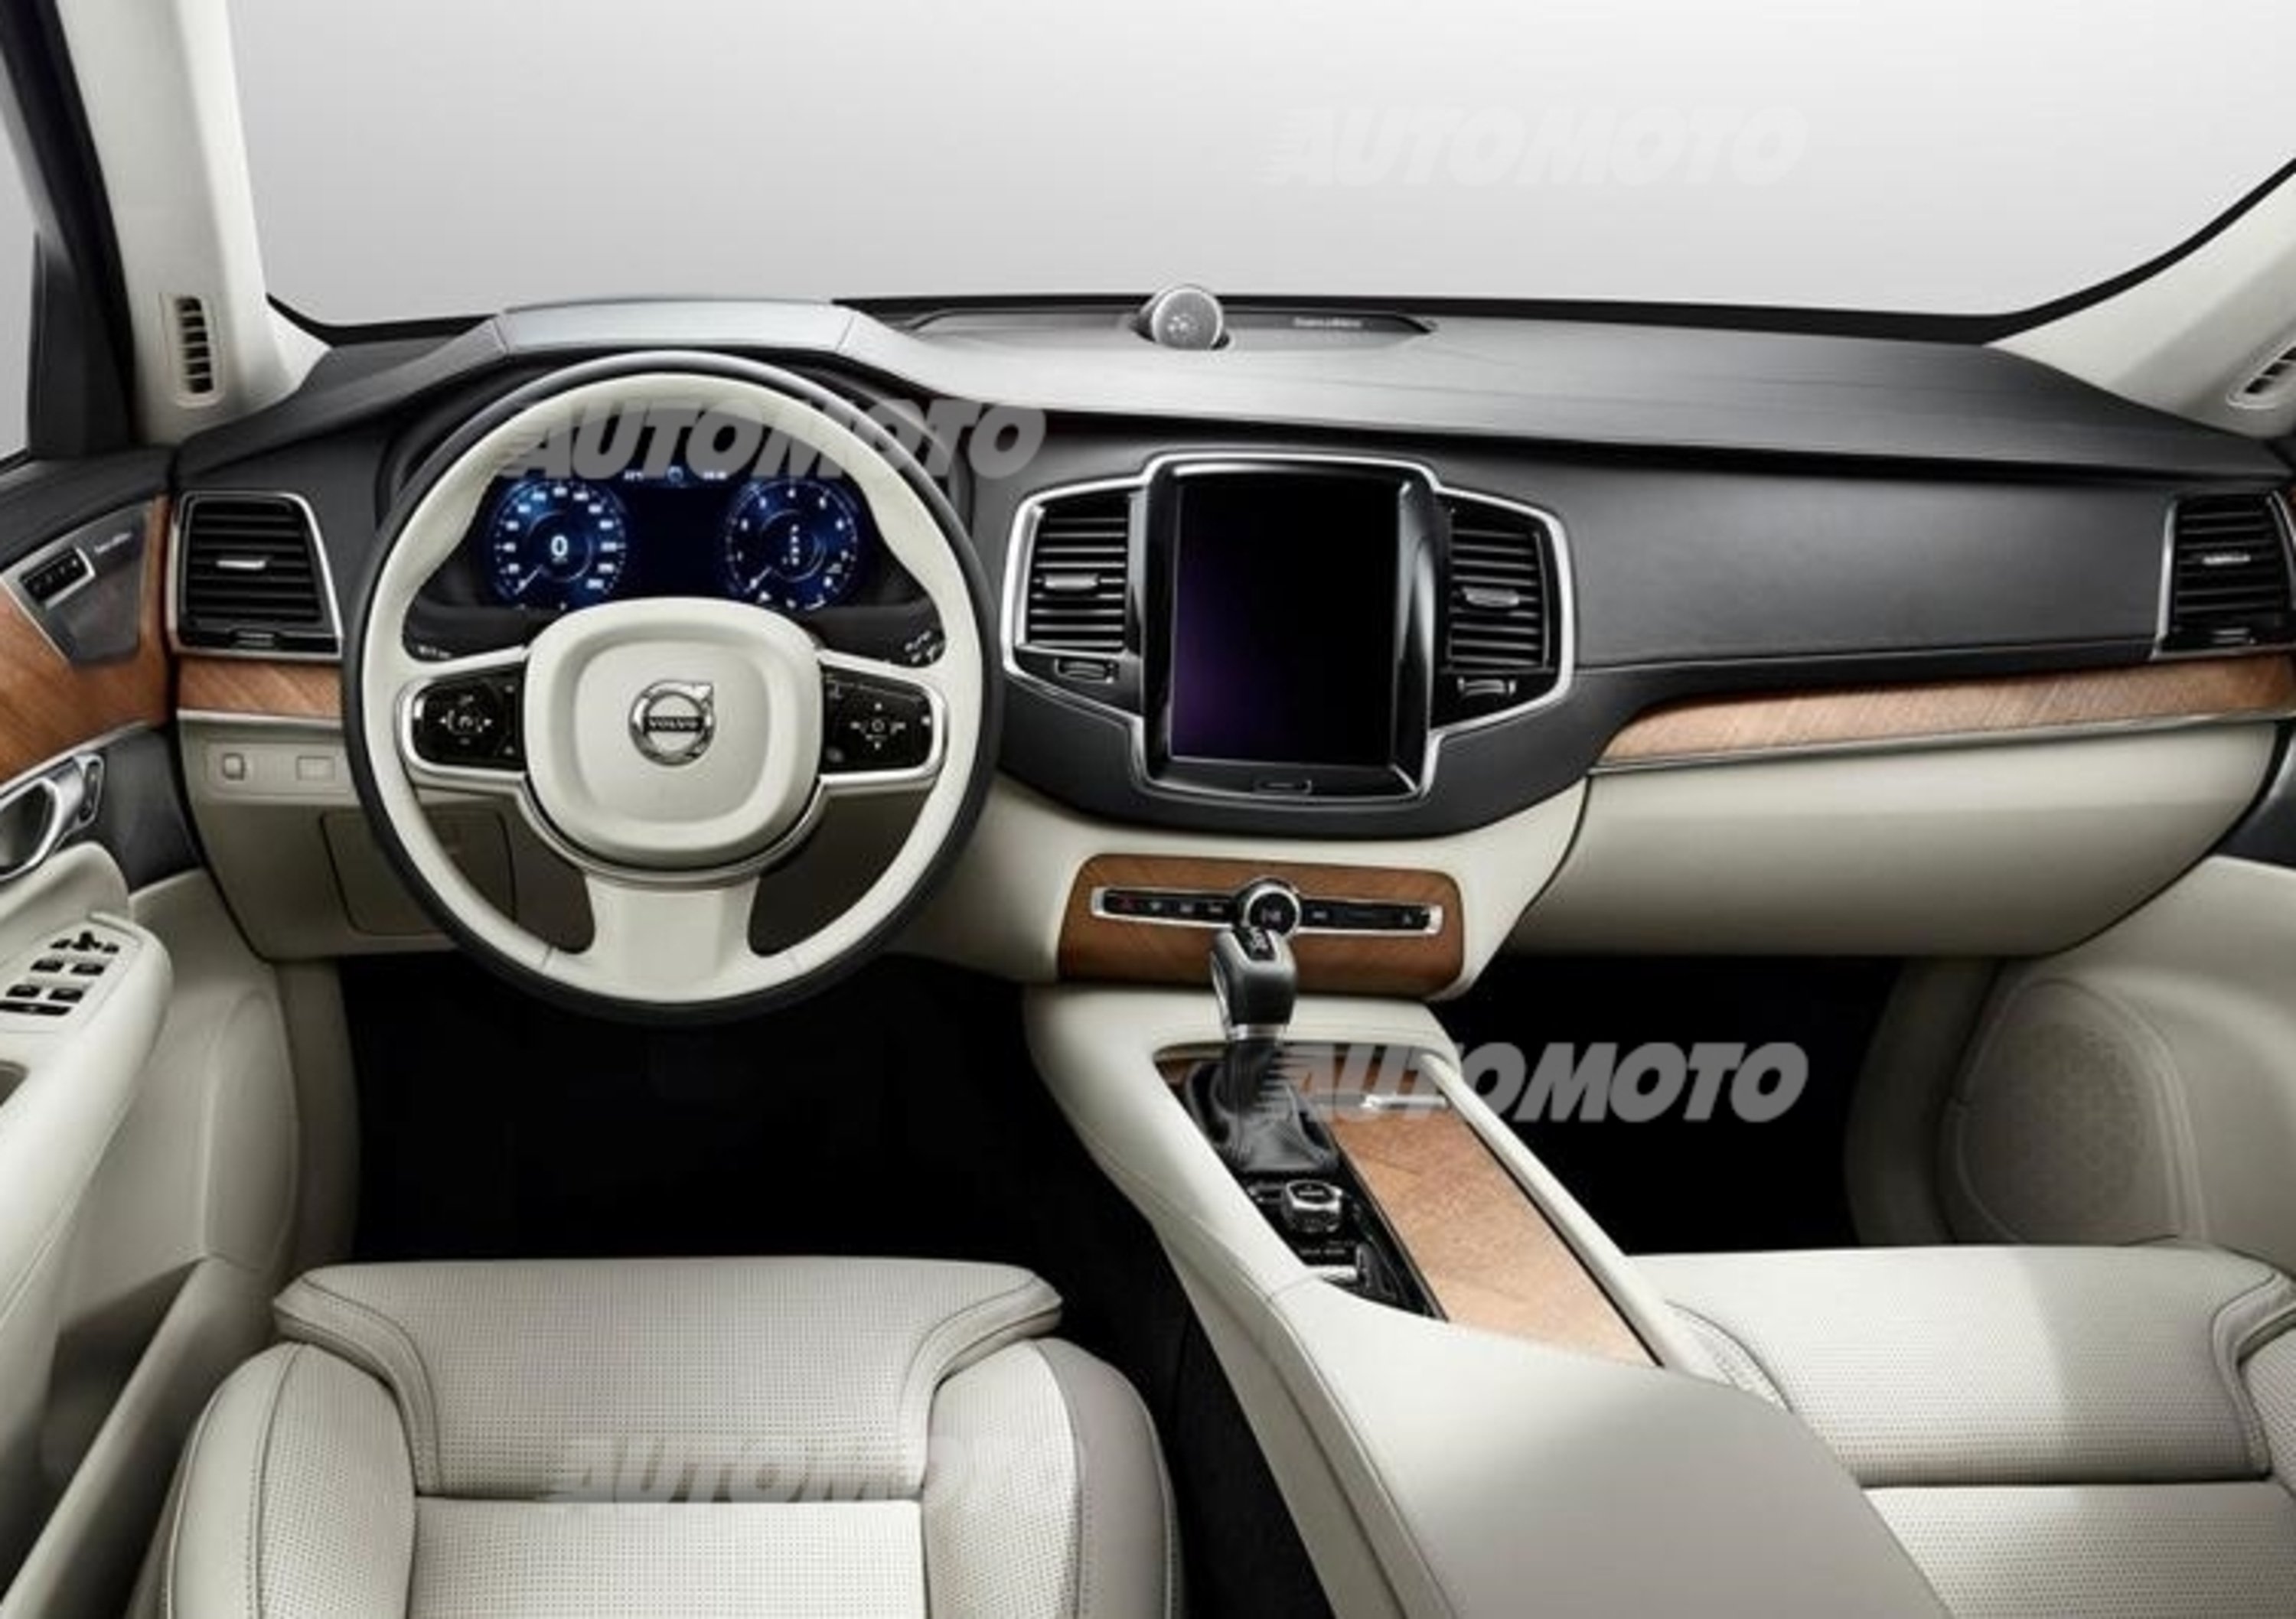 Nuova Volvo XC90: le prime immagini degli interni